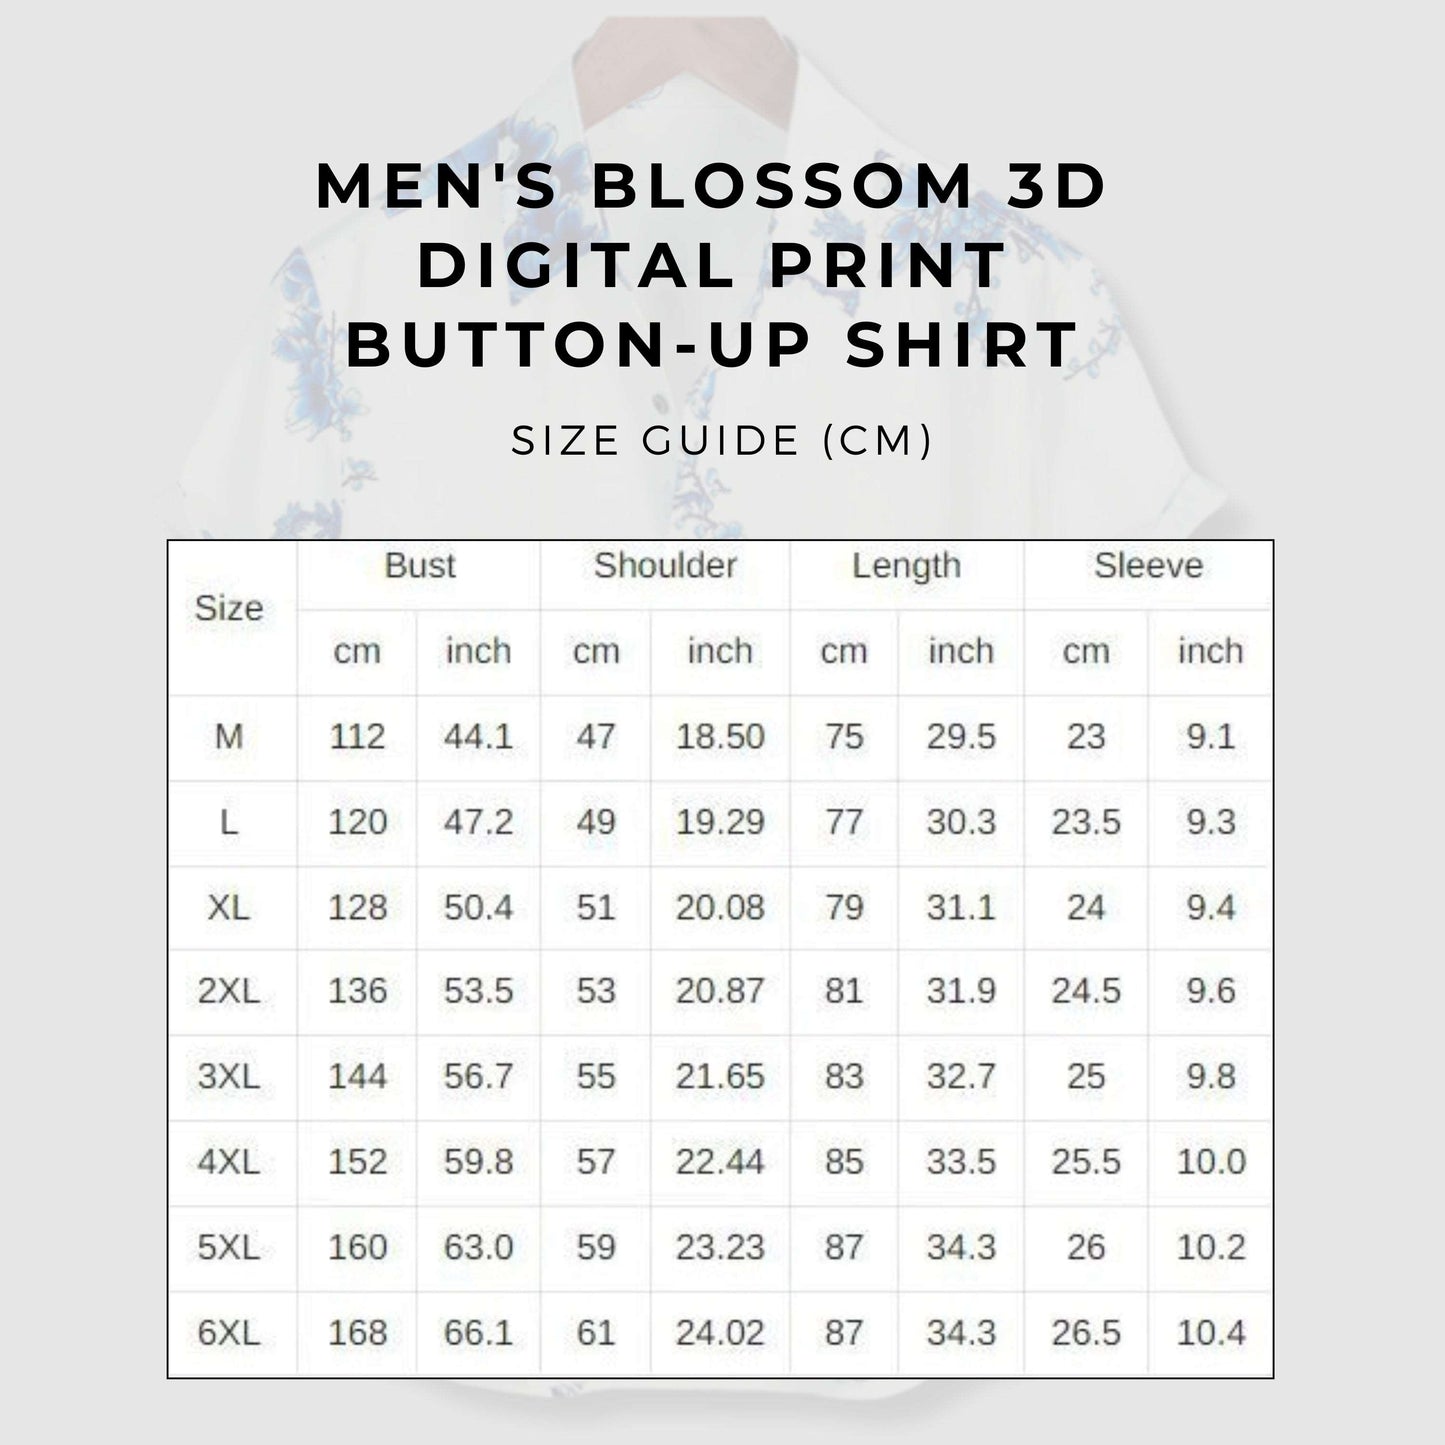 Men's Blossom 3D Digital Print Button-up Shirt size